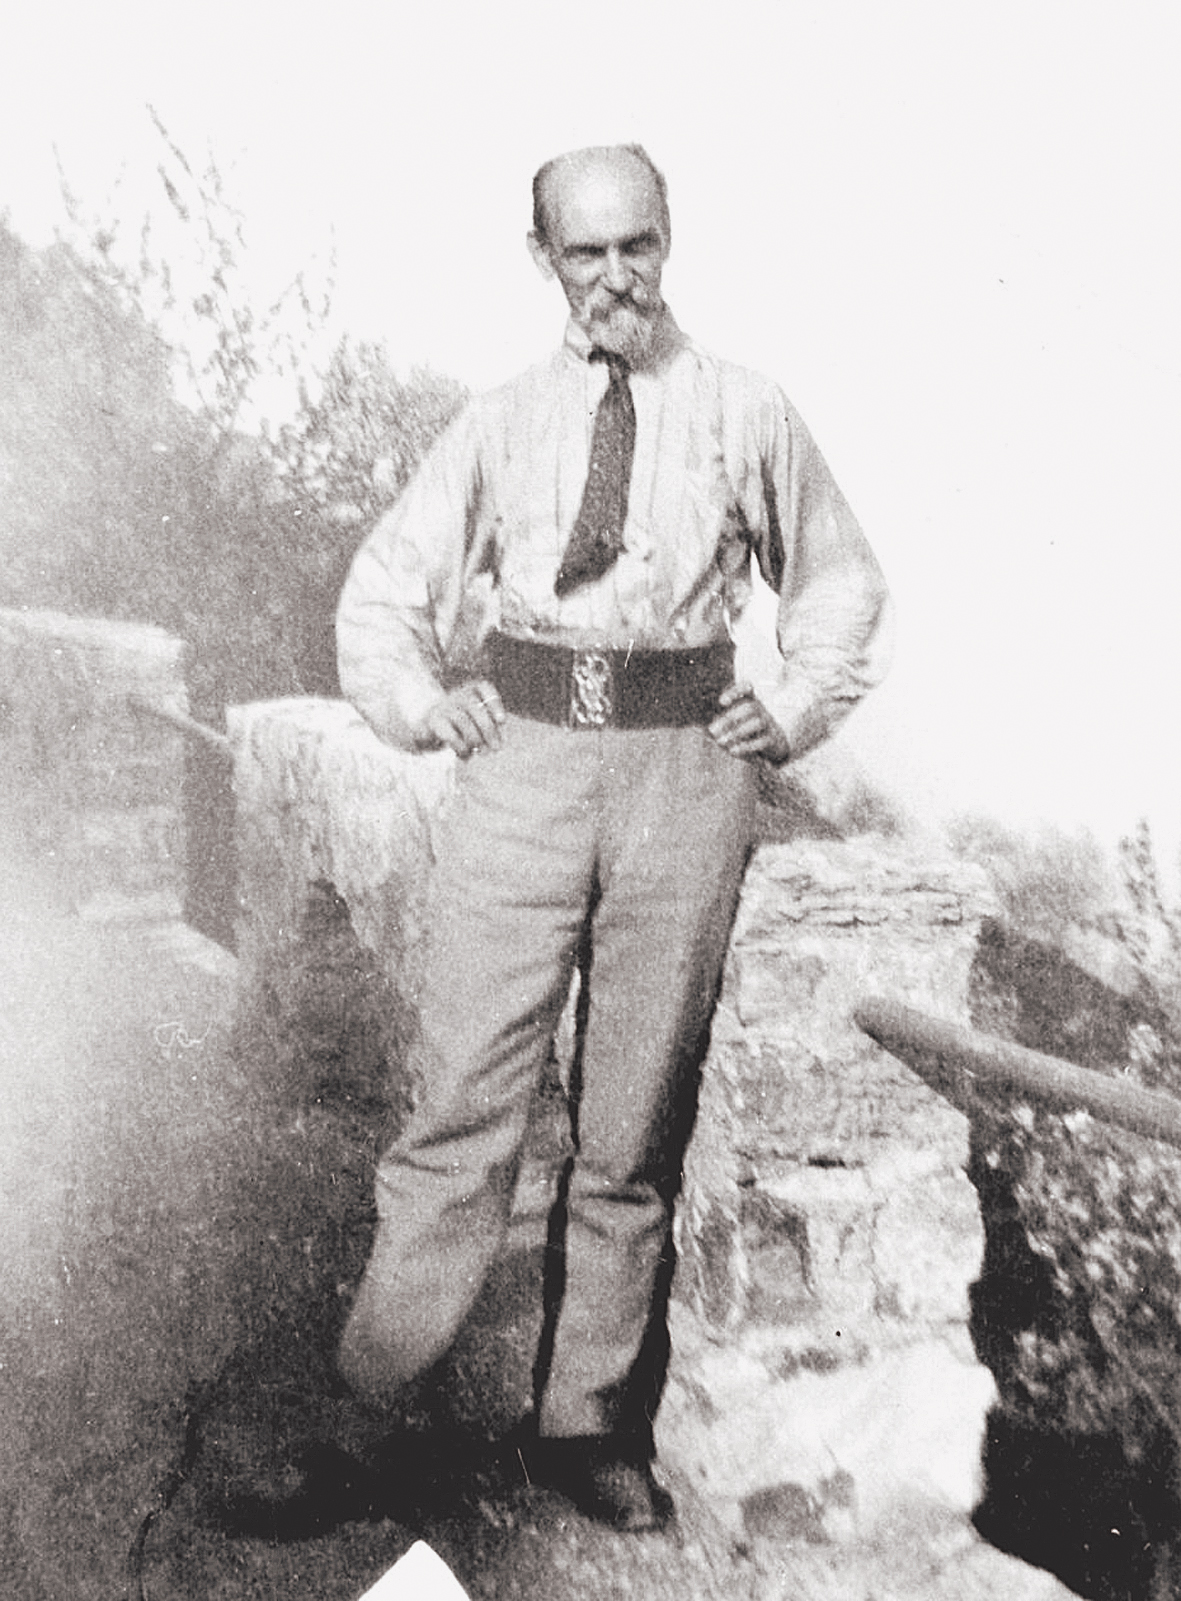 Rainis Kastaņolā ap 1909. gadu.  Autors nezināms